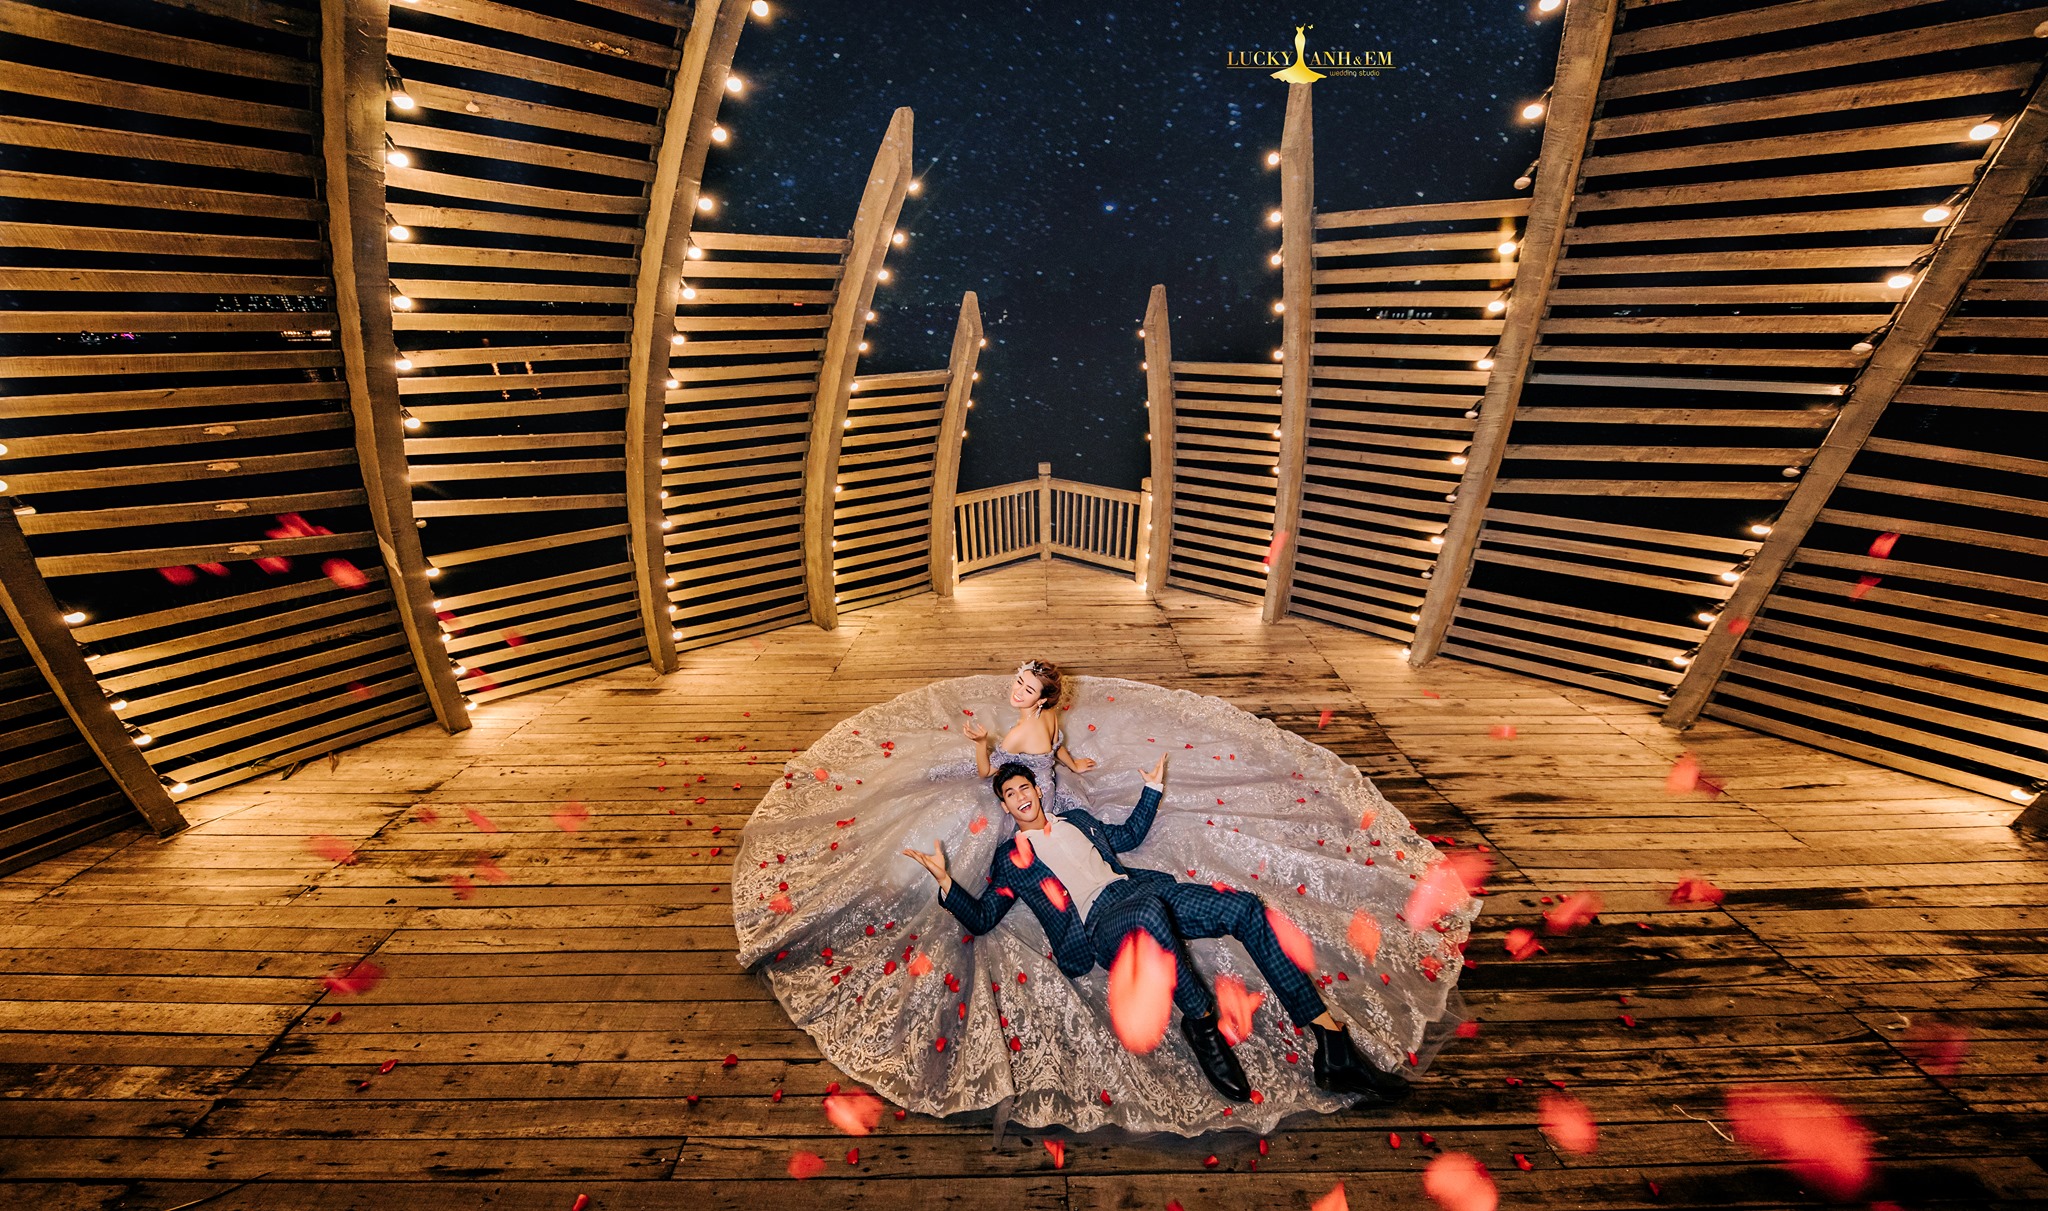 Hình cưới phim trường Alibaba